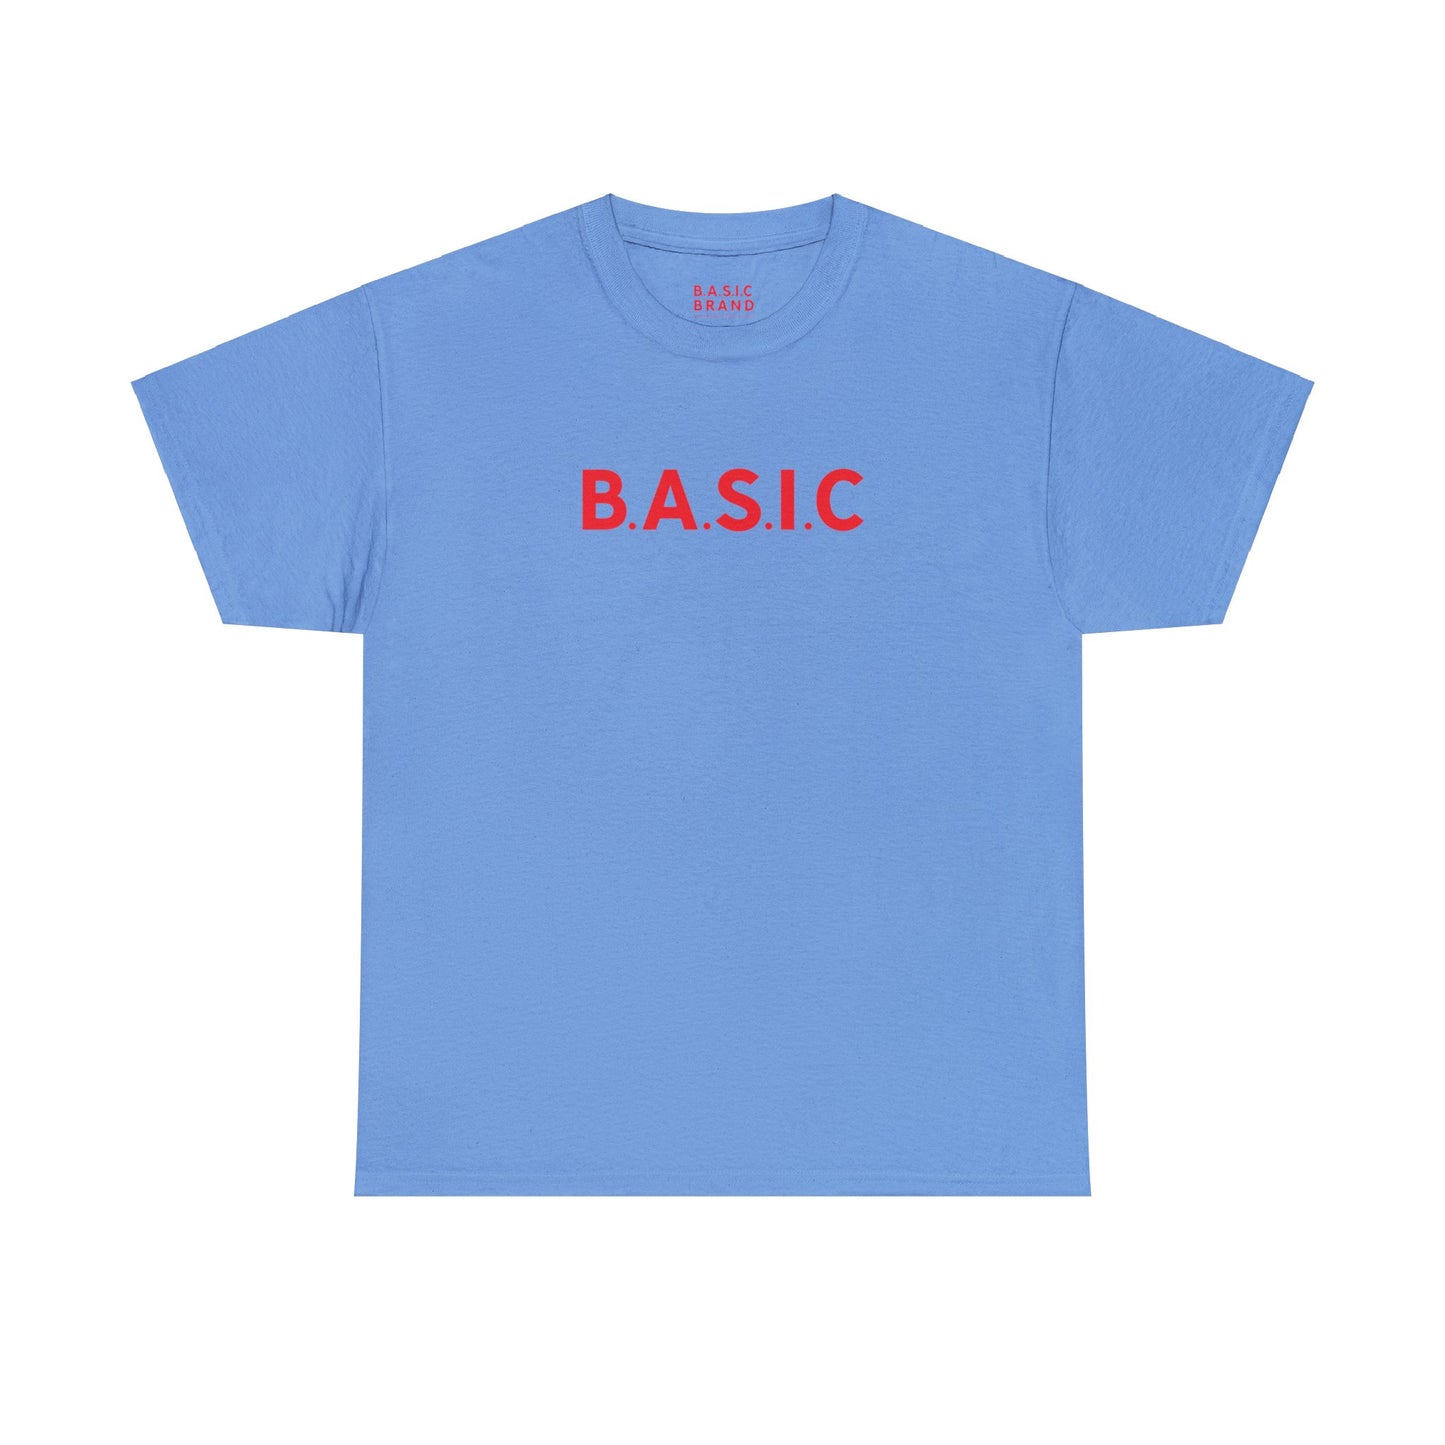 Men's B.A.S.I.C "Medium Sized Logo" Red Font Tee Shirt